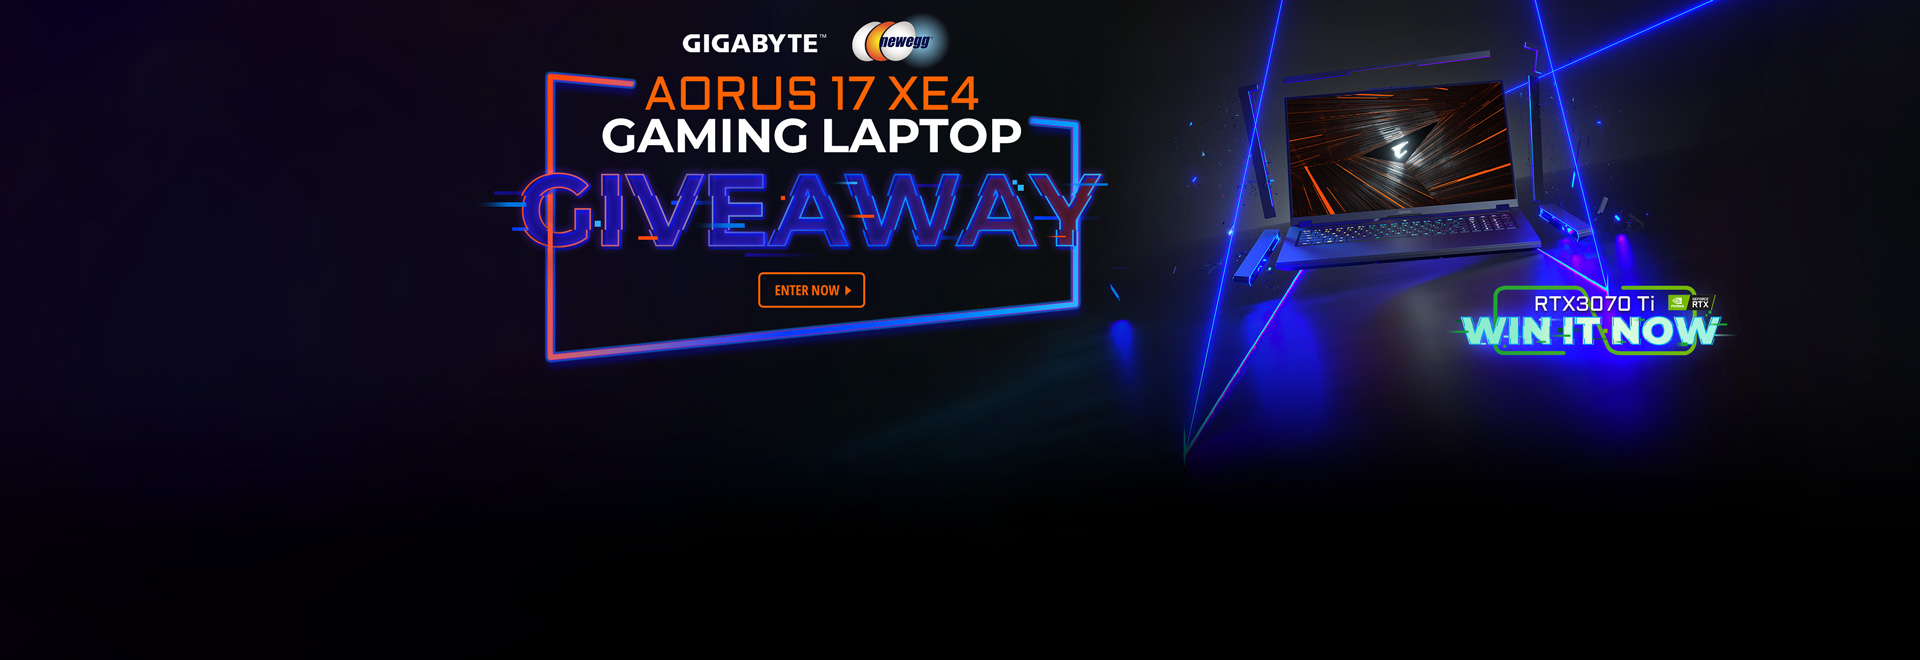 Gigabyte Aorus 17 XE4 Gaming Laptop Giveaway